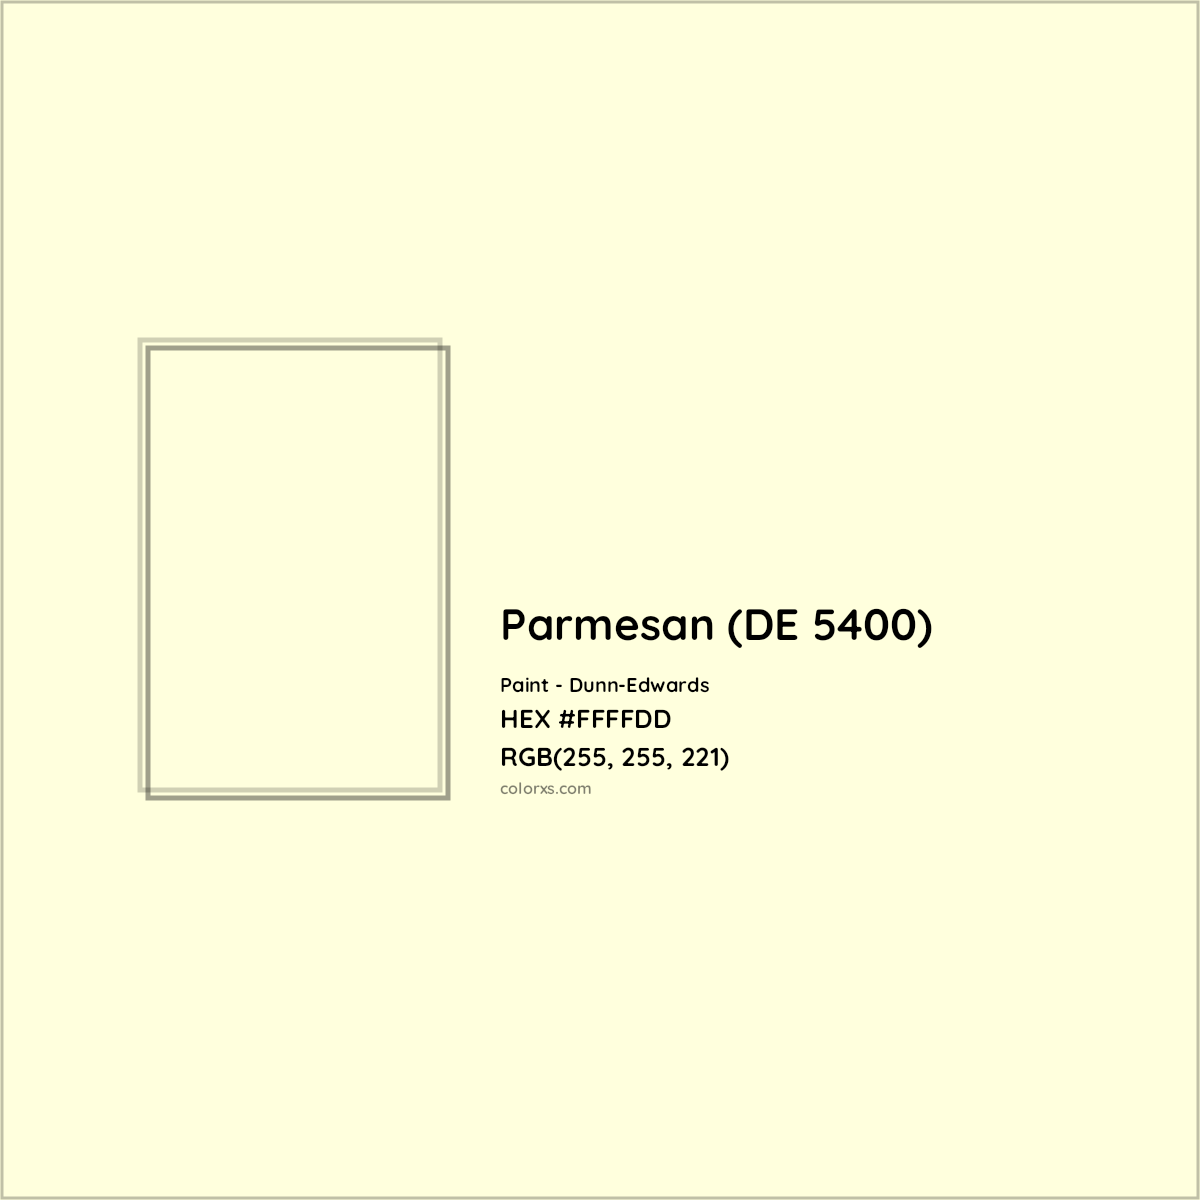 HEX #FFFFDD Parmesan (DE 5400) Paint Dunn-Edwards - Color Code